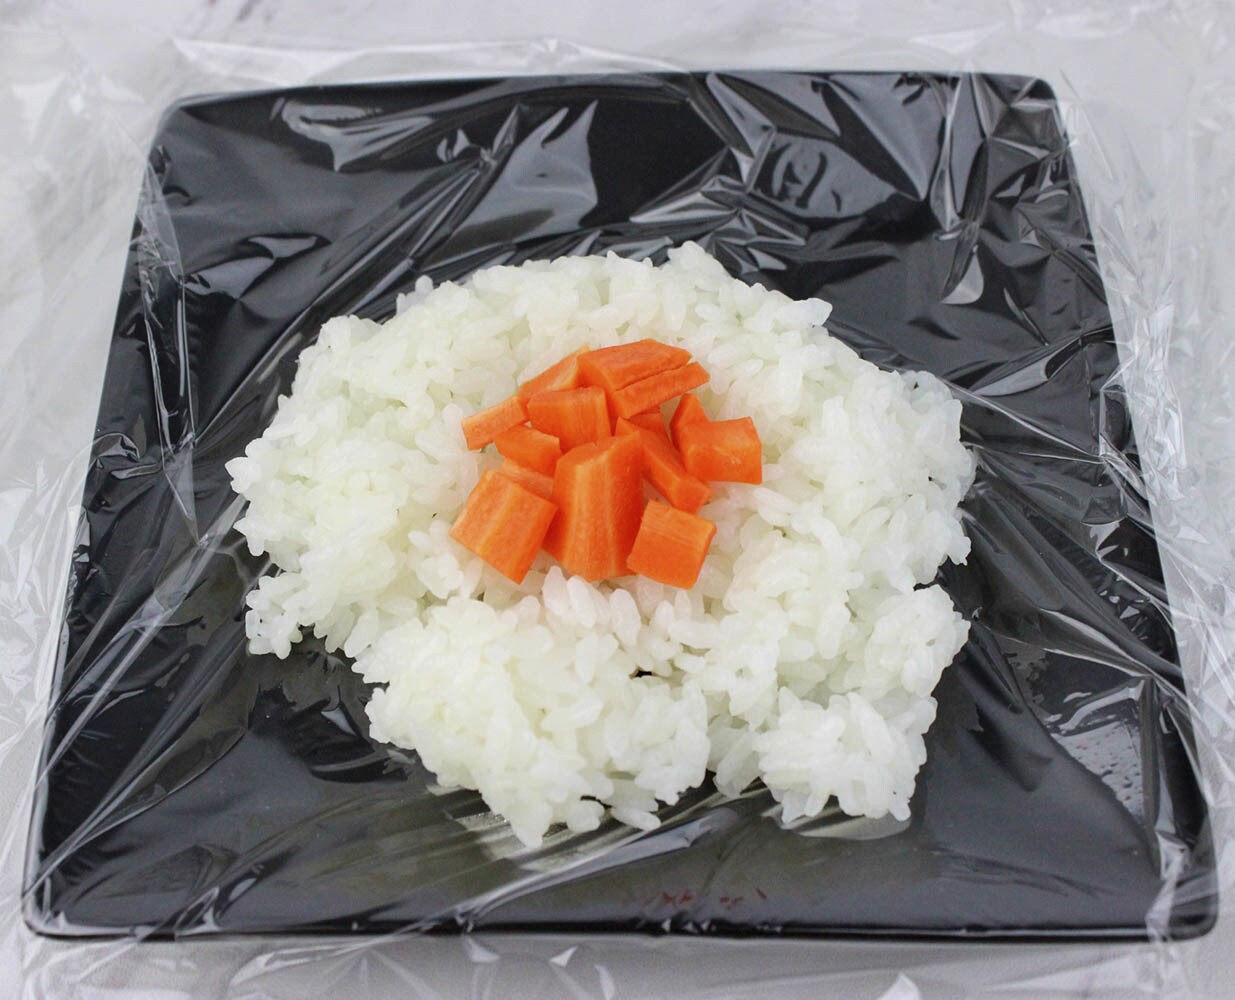 Kylo Ren rice ball ingredients